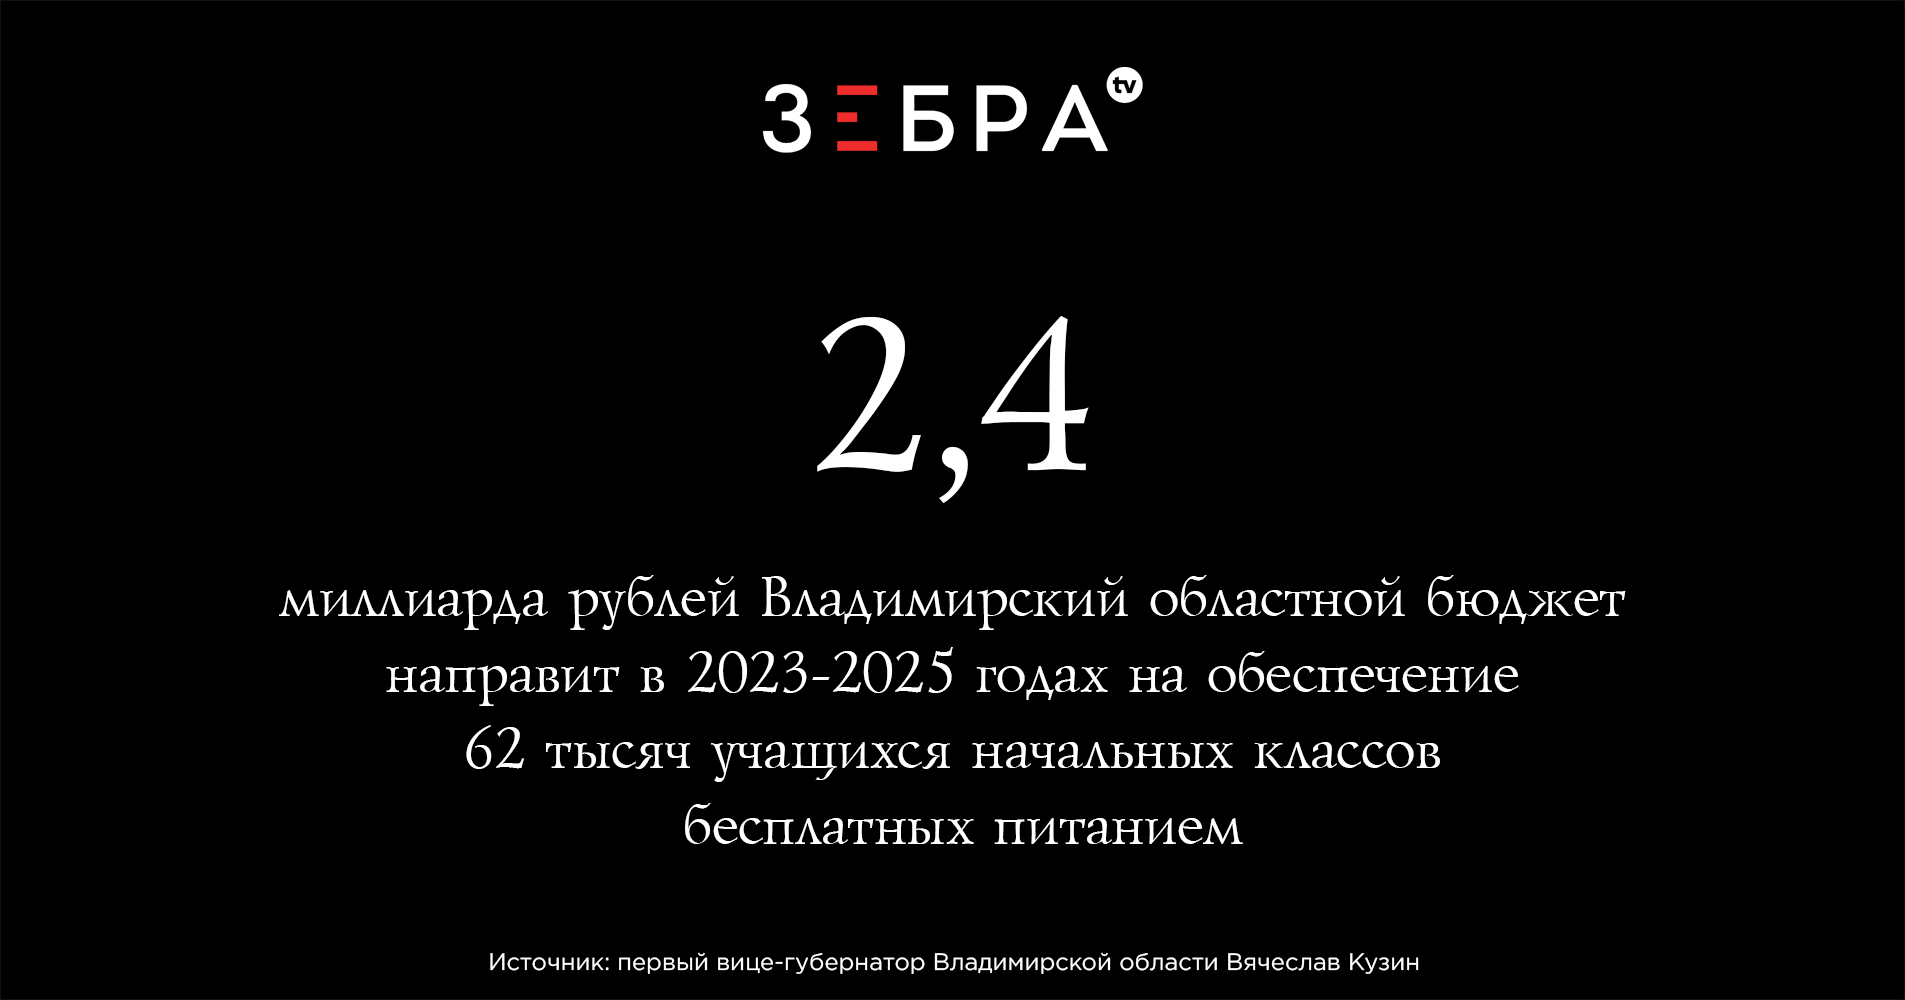 2,4 миллиарда рублей Владимирский областной бюджет направит в 2023-2025 годах на обеспечение 62 тысяч учащихся начальных классов бесплатных питанием